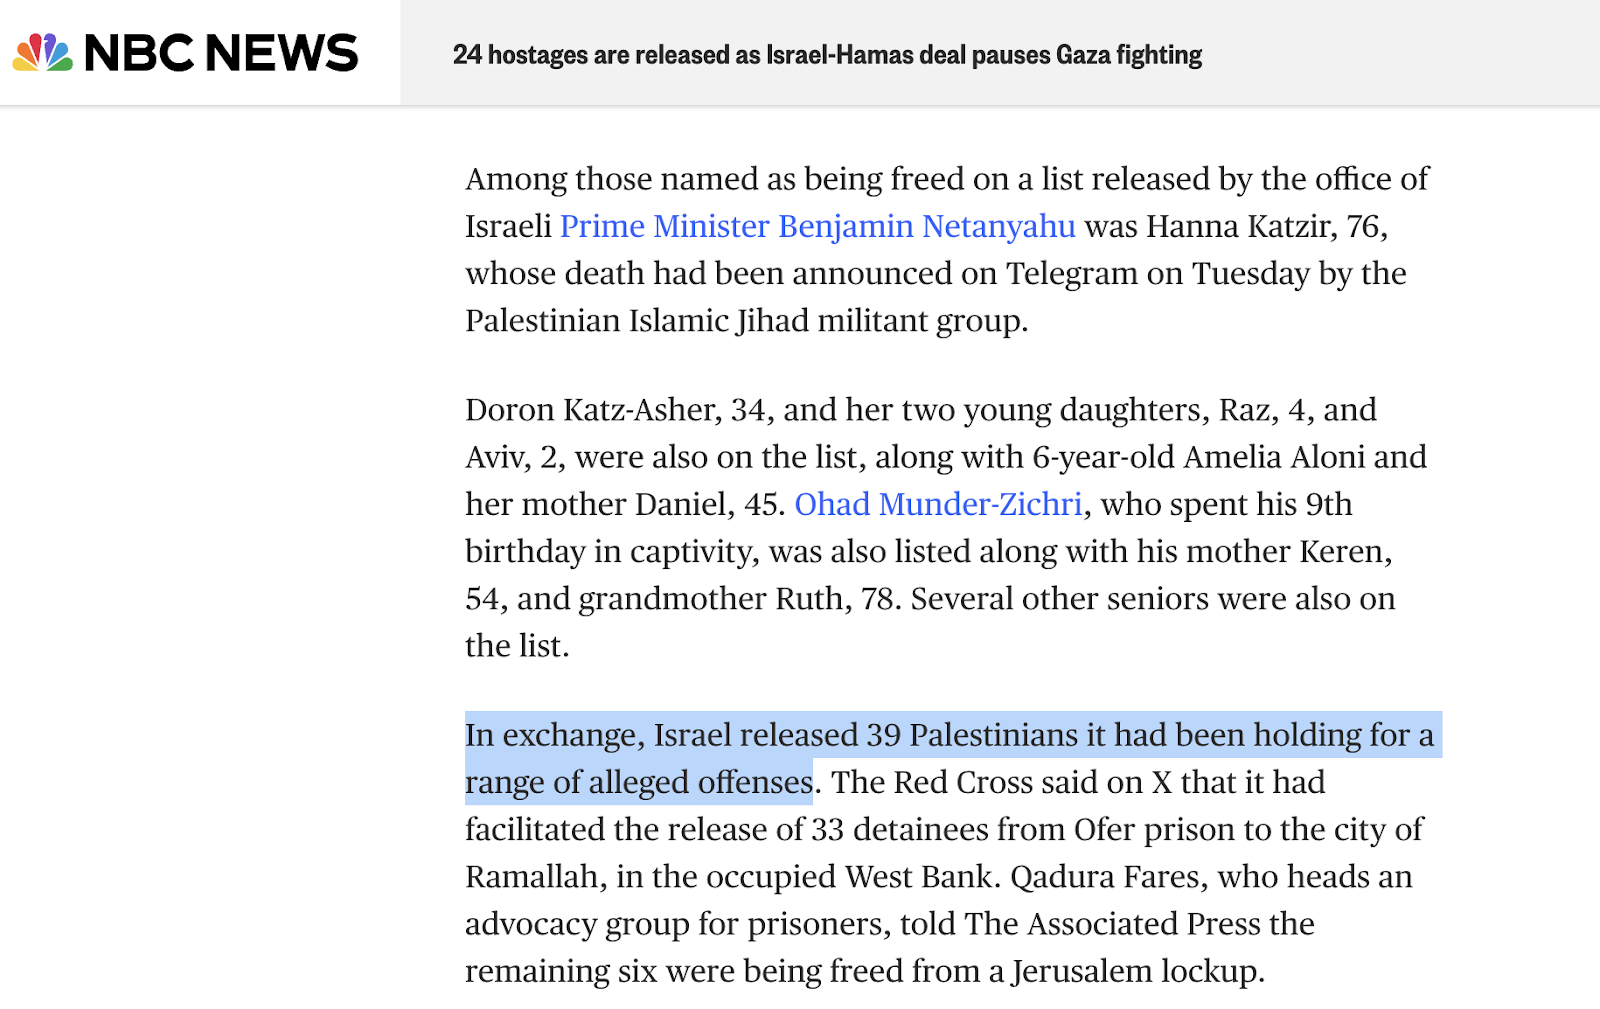 قناة NBC تؤكد أن الأسرى الفلسطينيين محتجزين بسبب ارتكابهم جرائم